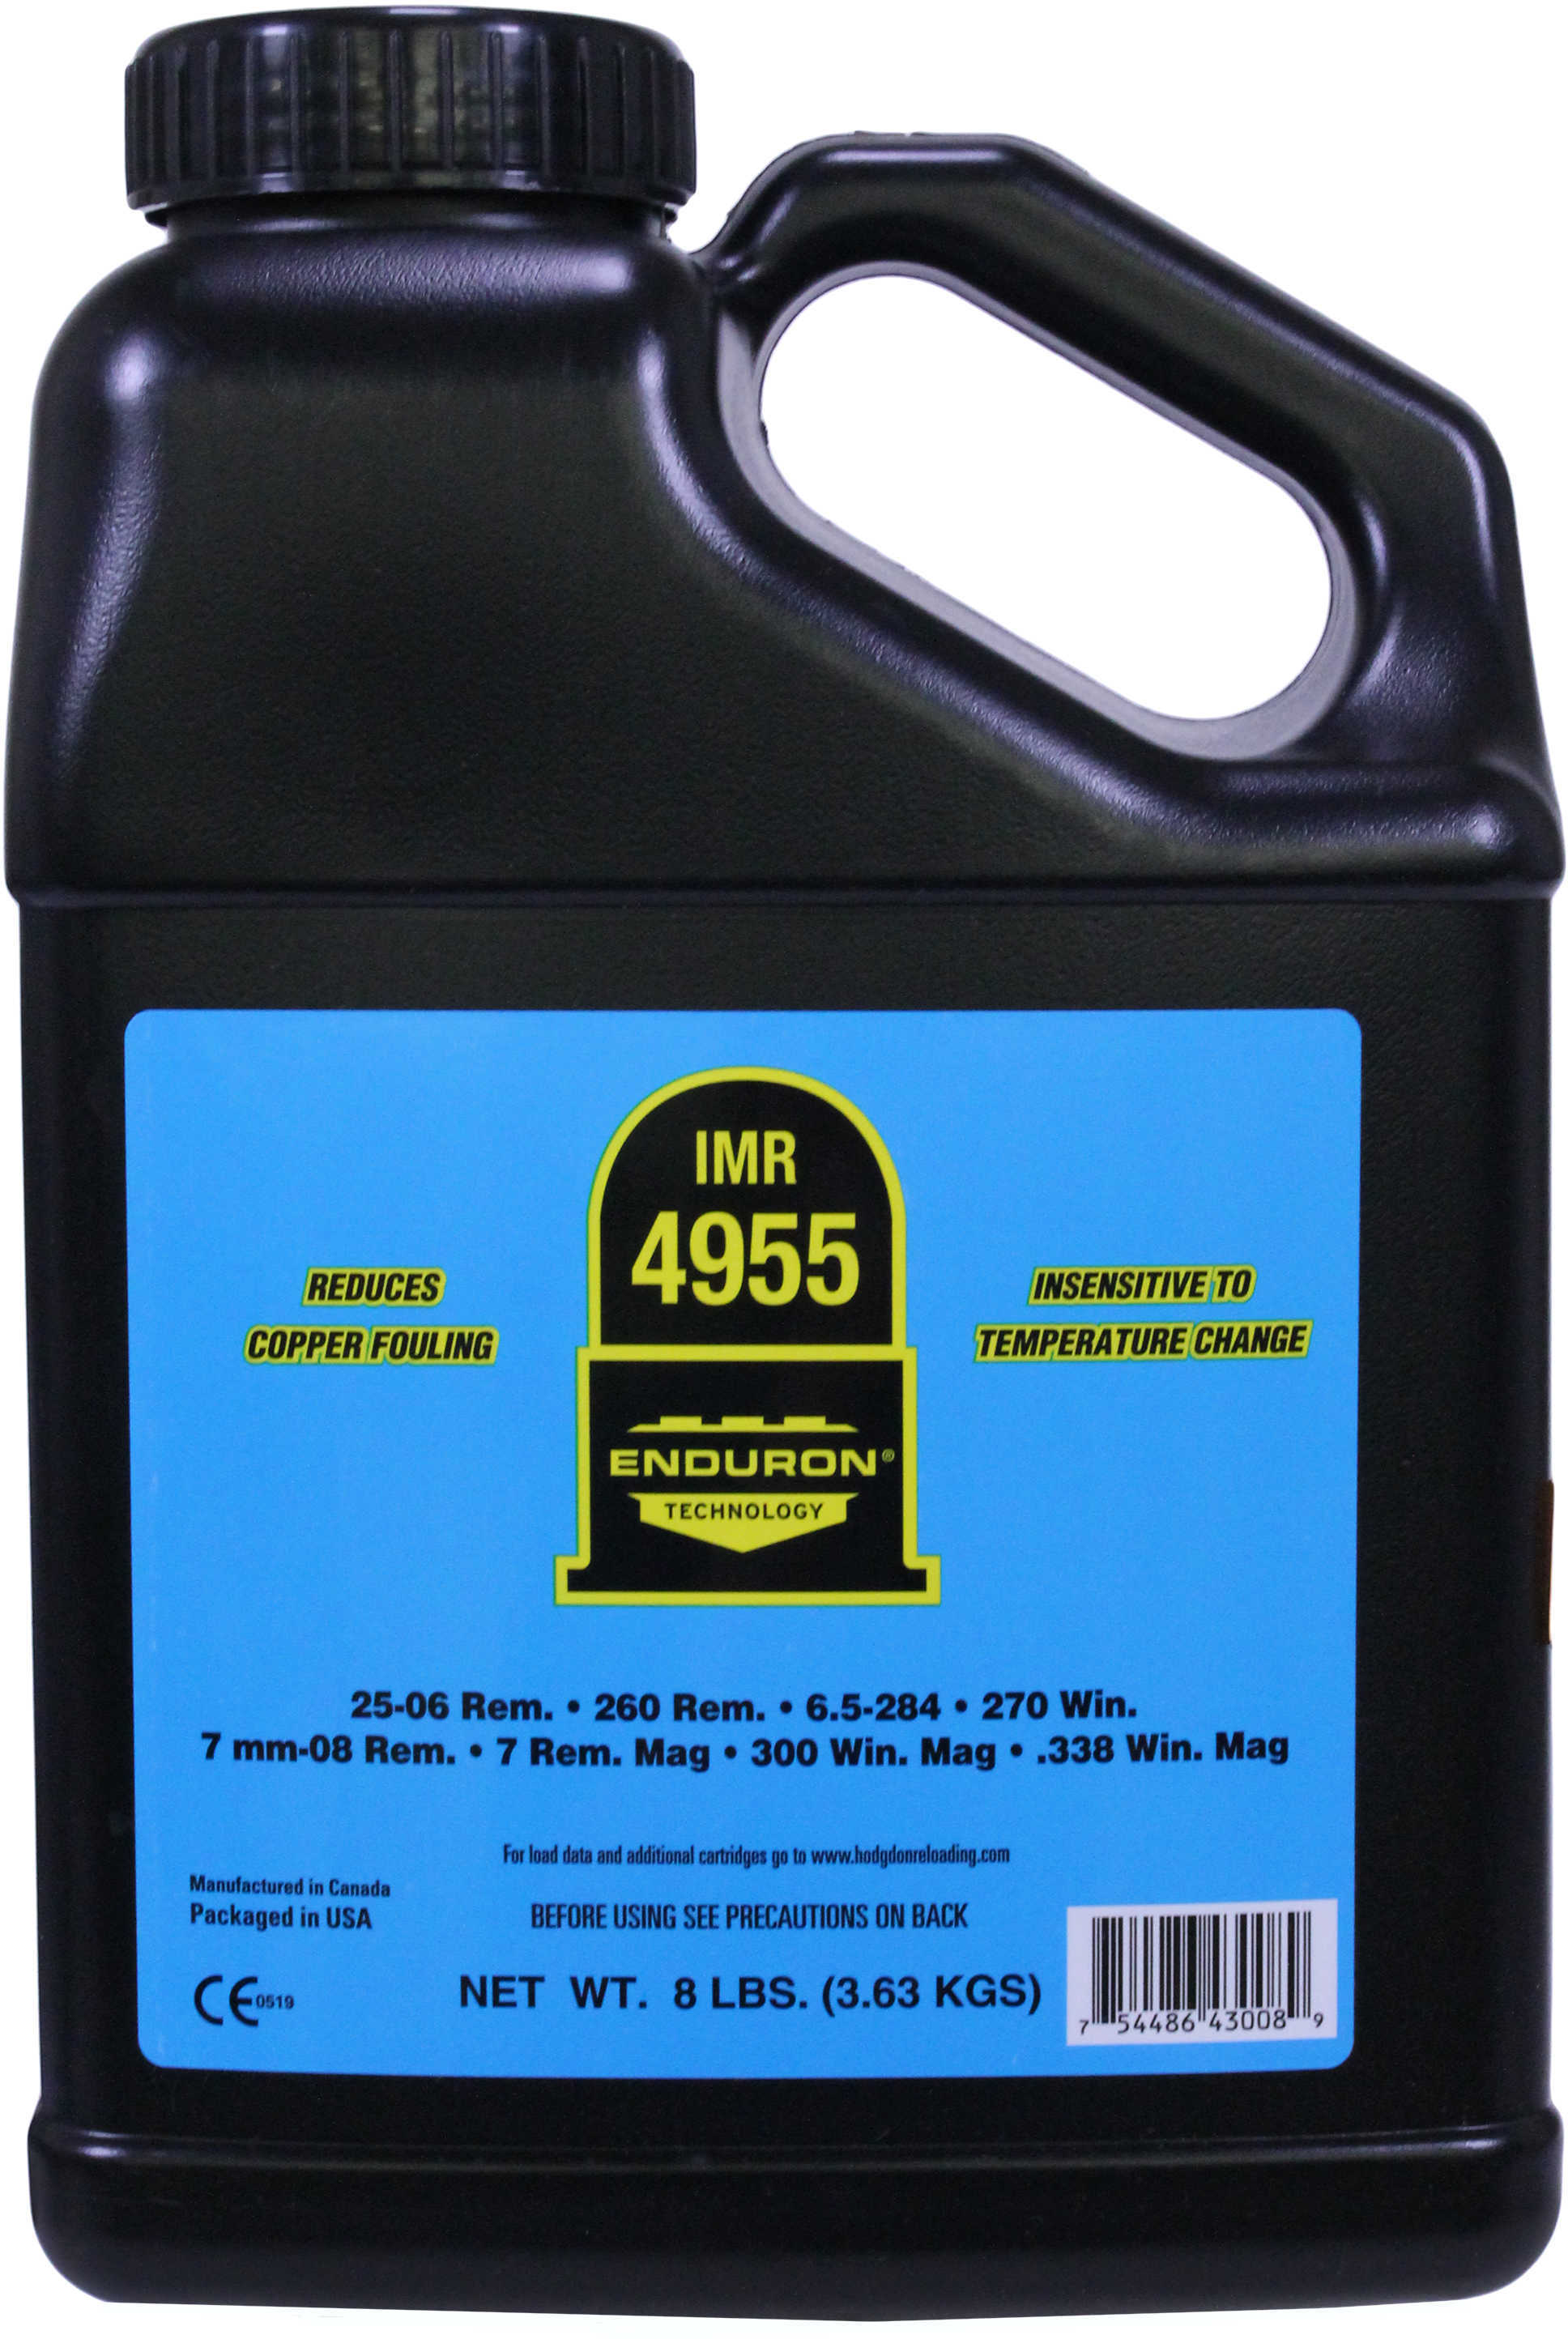 IMR 4955 with ENDURON Technology Smokeless Powder 8 Lbs